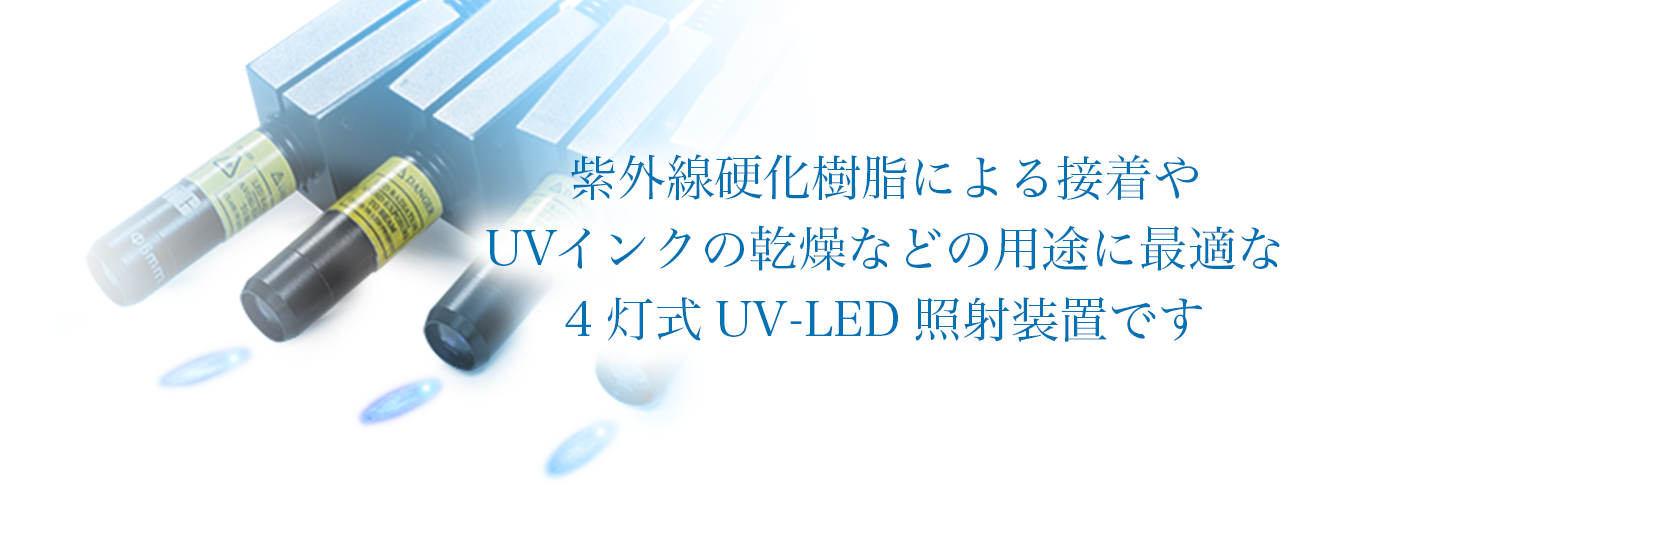 bg uv-led-unit 02